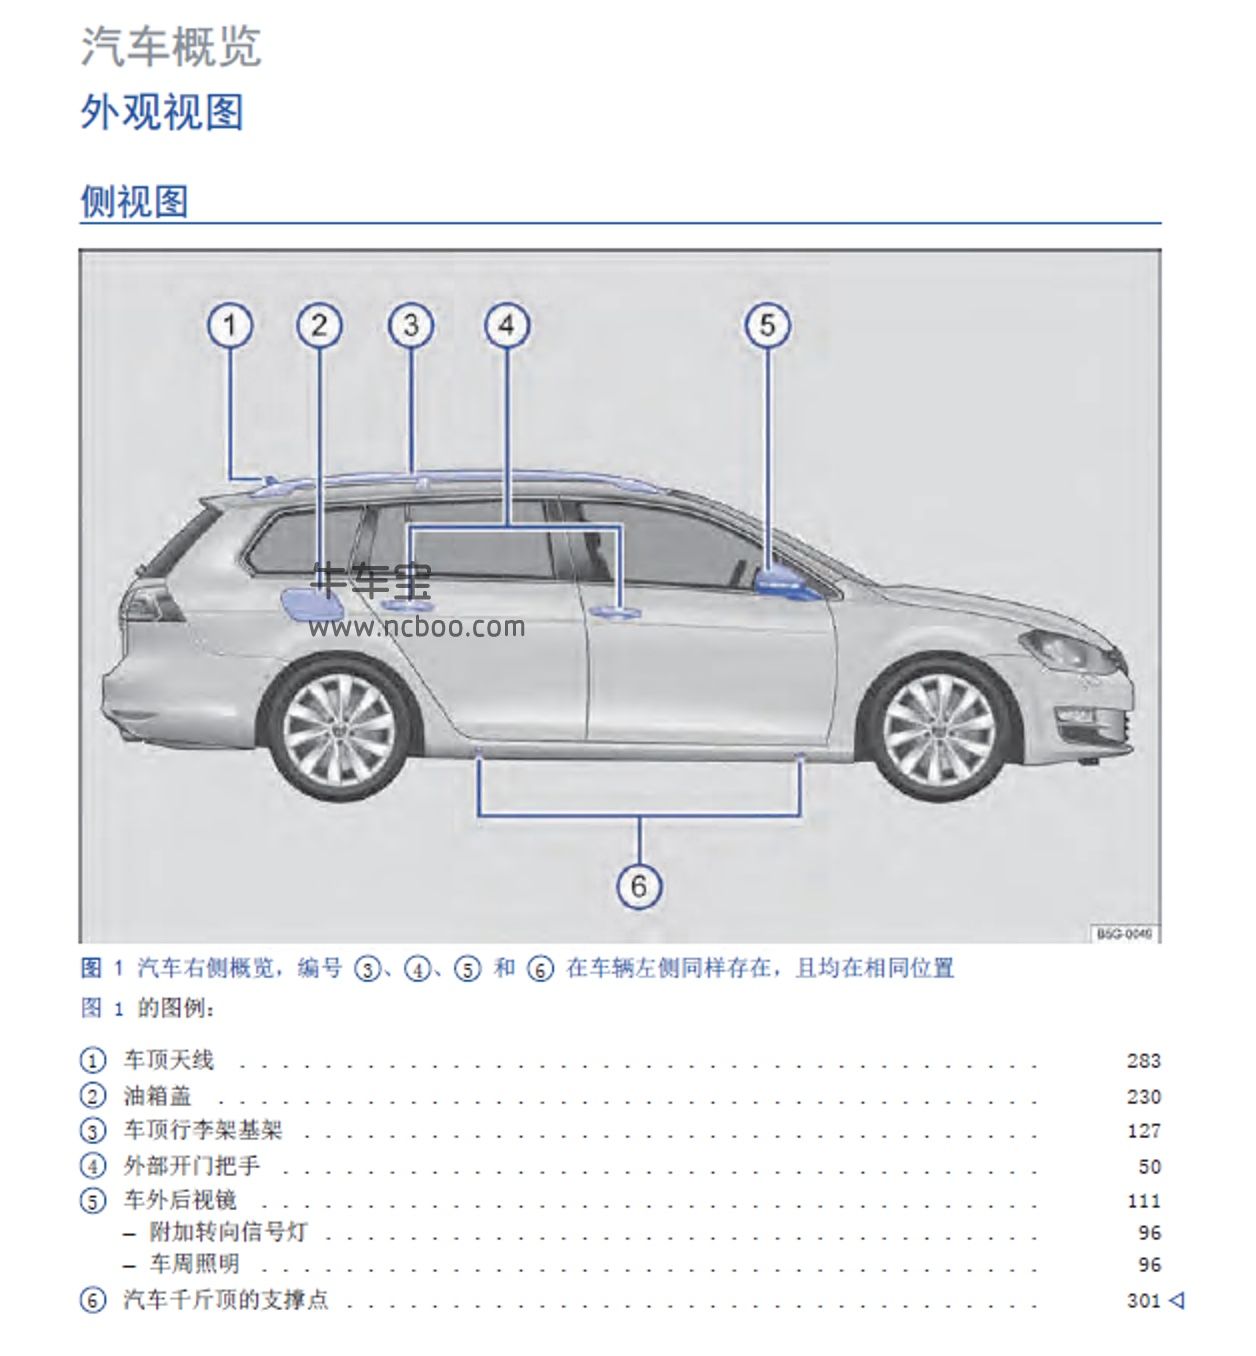 2014款大众高尔夫旅行轿车用户手册-产品使用说明书pdf下载